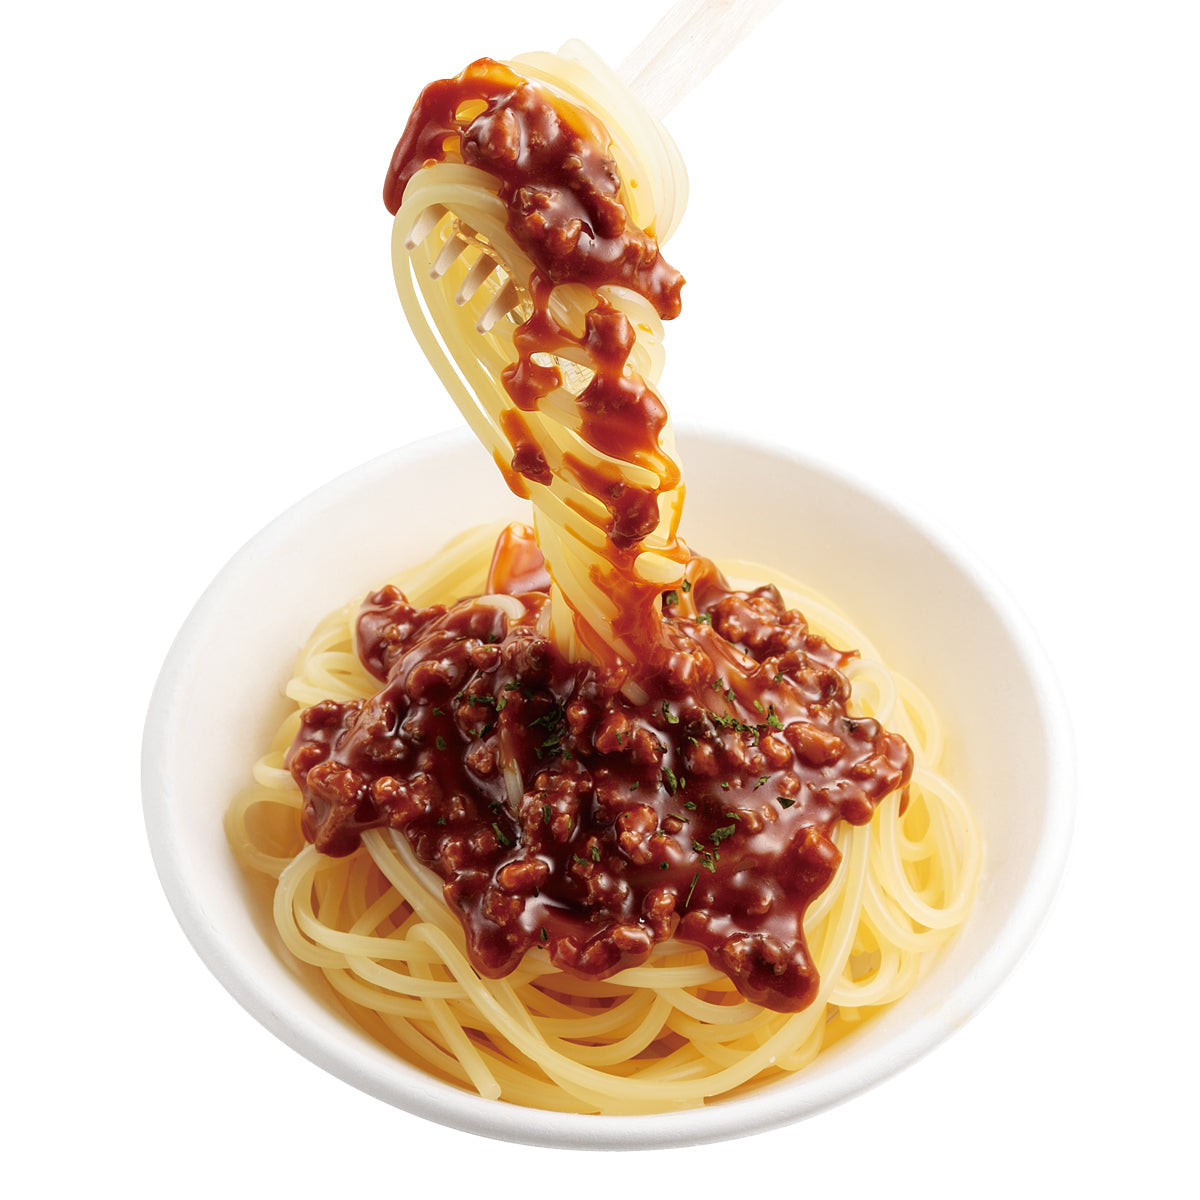 自分でつくる食品サンプル製作キット「さんぷるんvol.2 ミートソーススパゲッティ」の完成イメージがそうです。